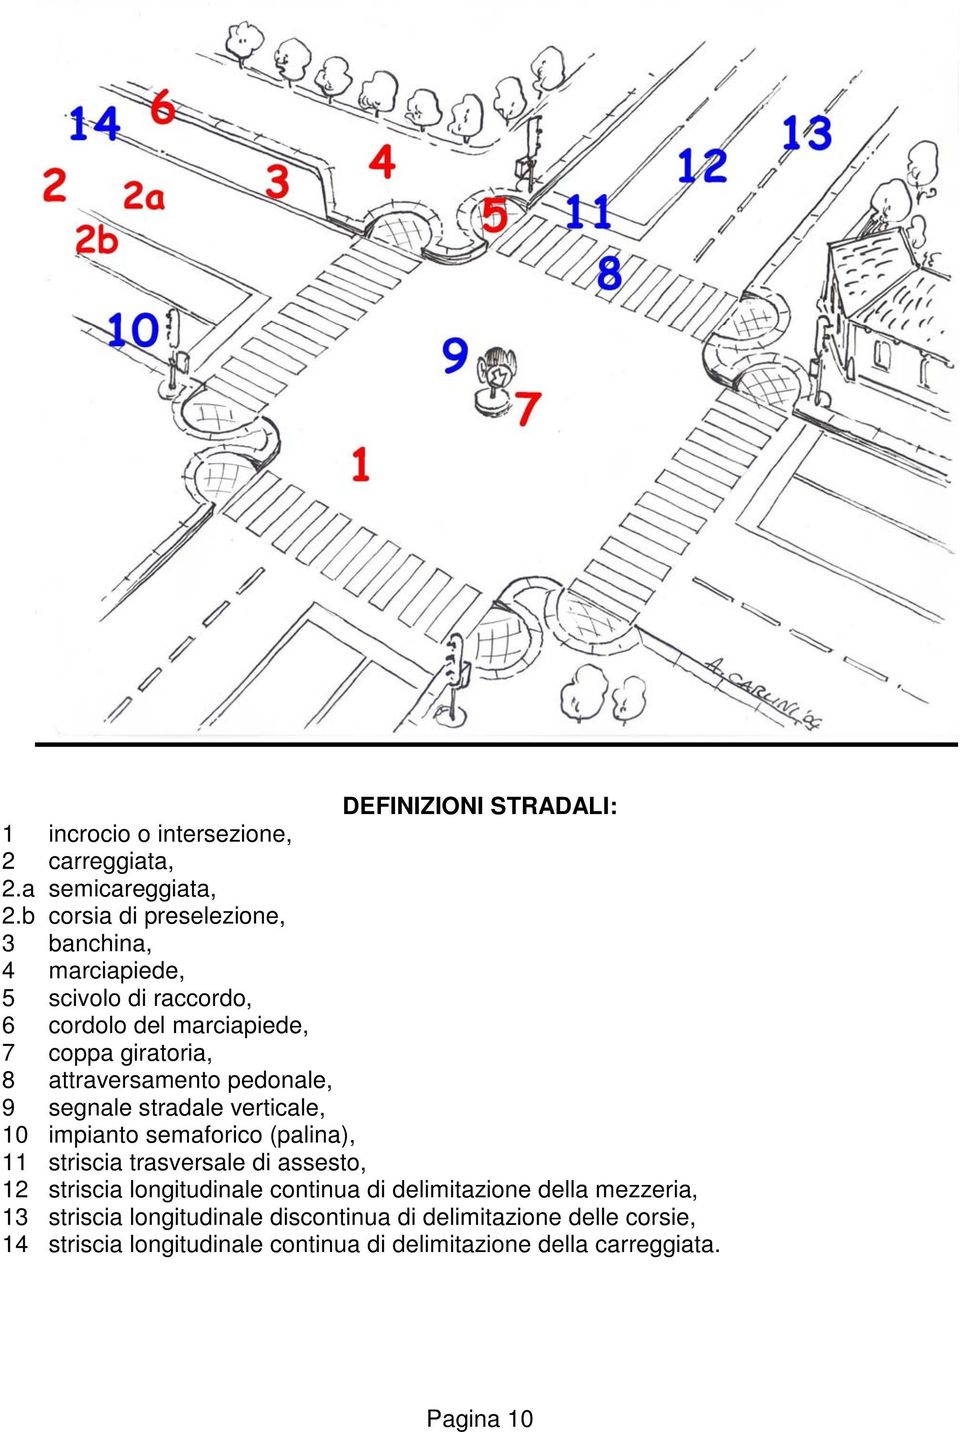 attraversamento pedonale, 9 segnale stradale verticale, 10 impianto semaforico (palina), 11 striscia trasversale di assesto, 12 striscia